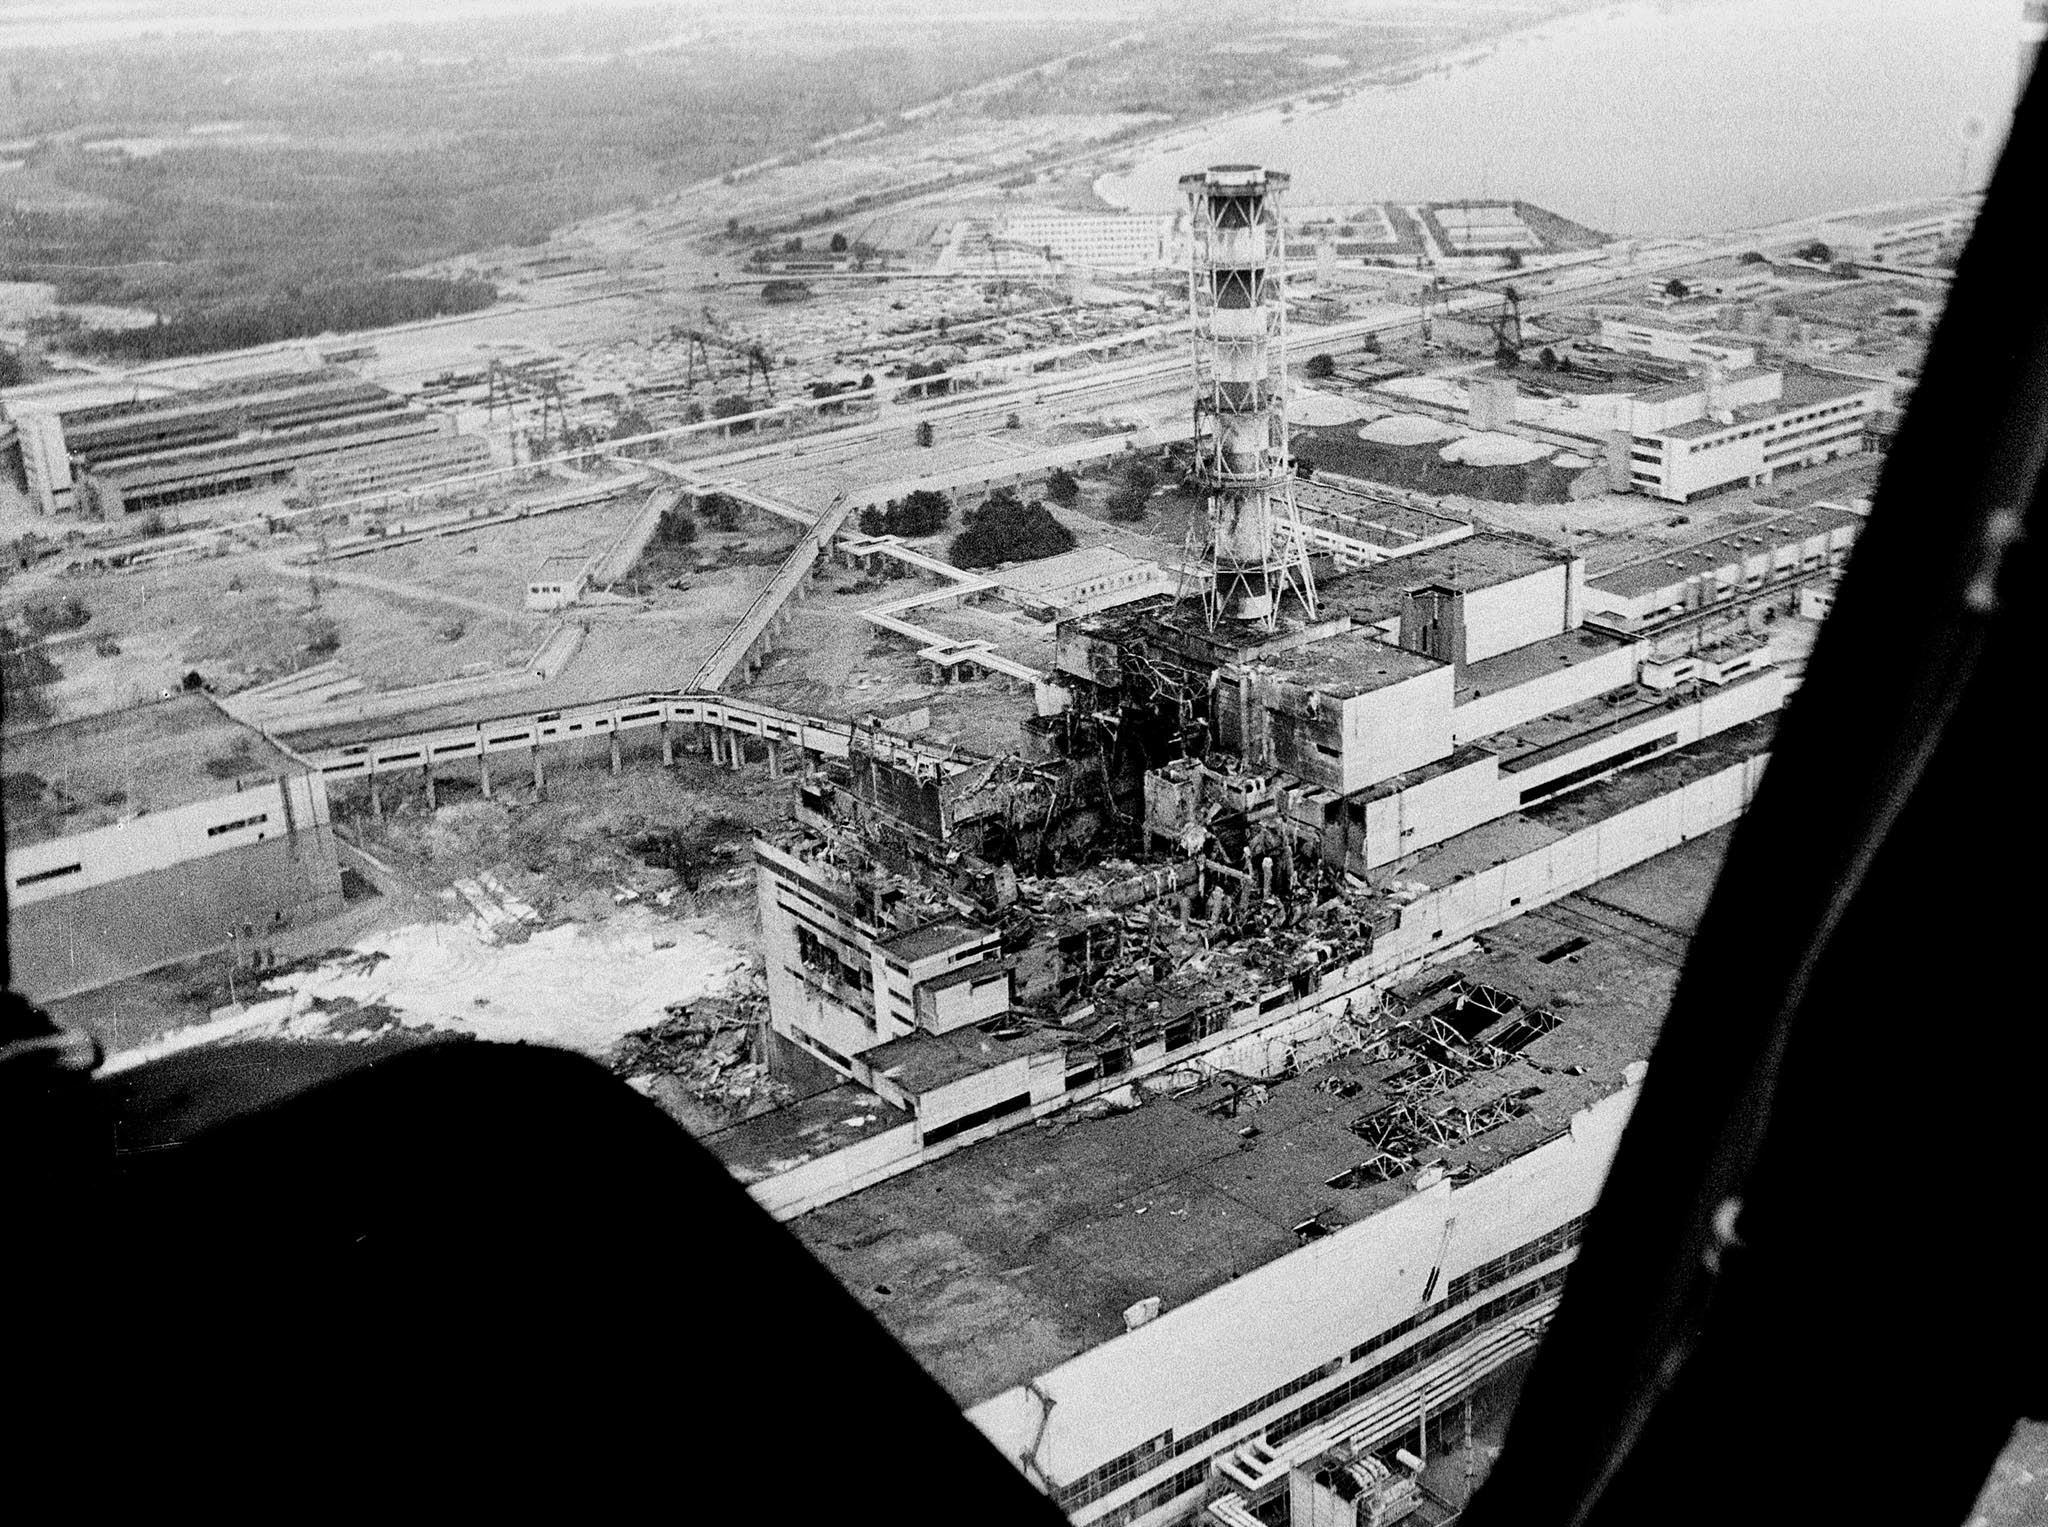 Olyckan inträffade lördagen 26 april 1986 klockan 01.23.45, när reaktor 4 i kärnkraftverket Tjernobyl förstördes genom en explosion.